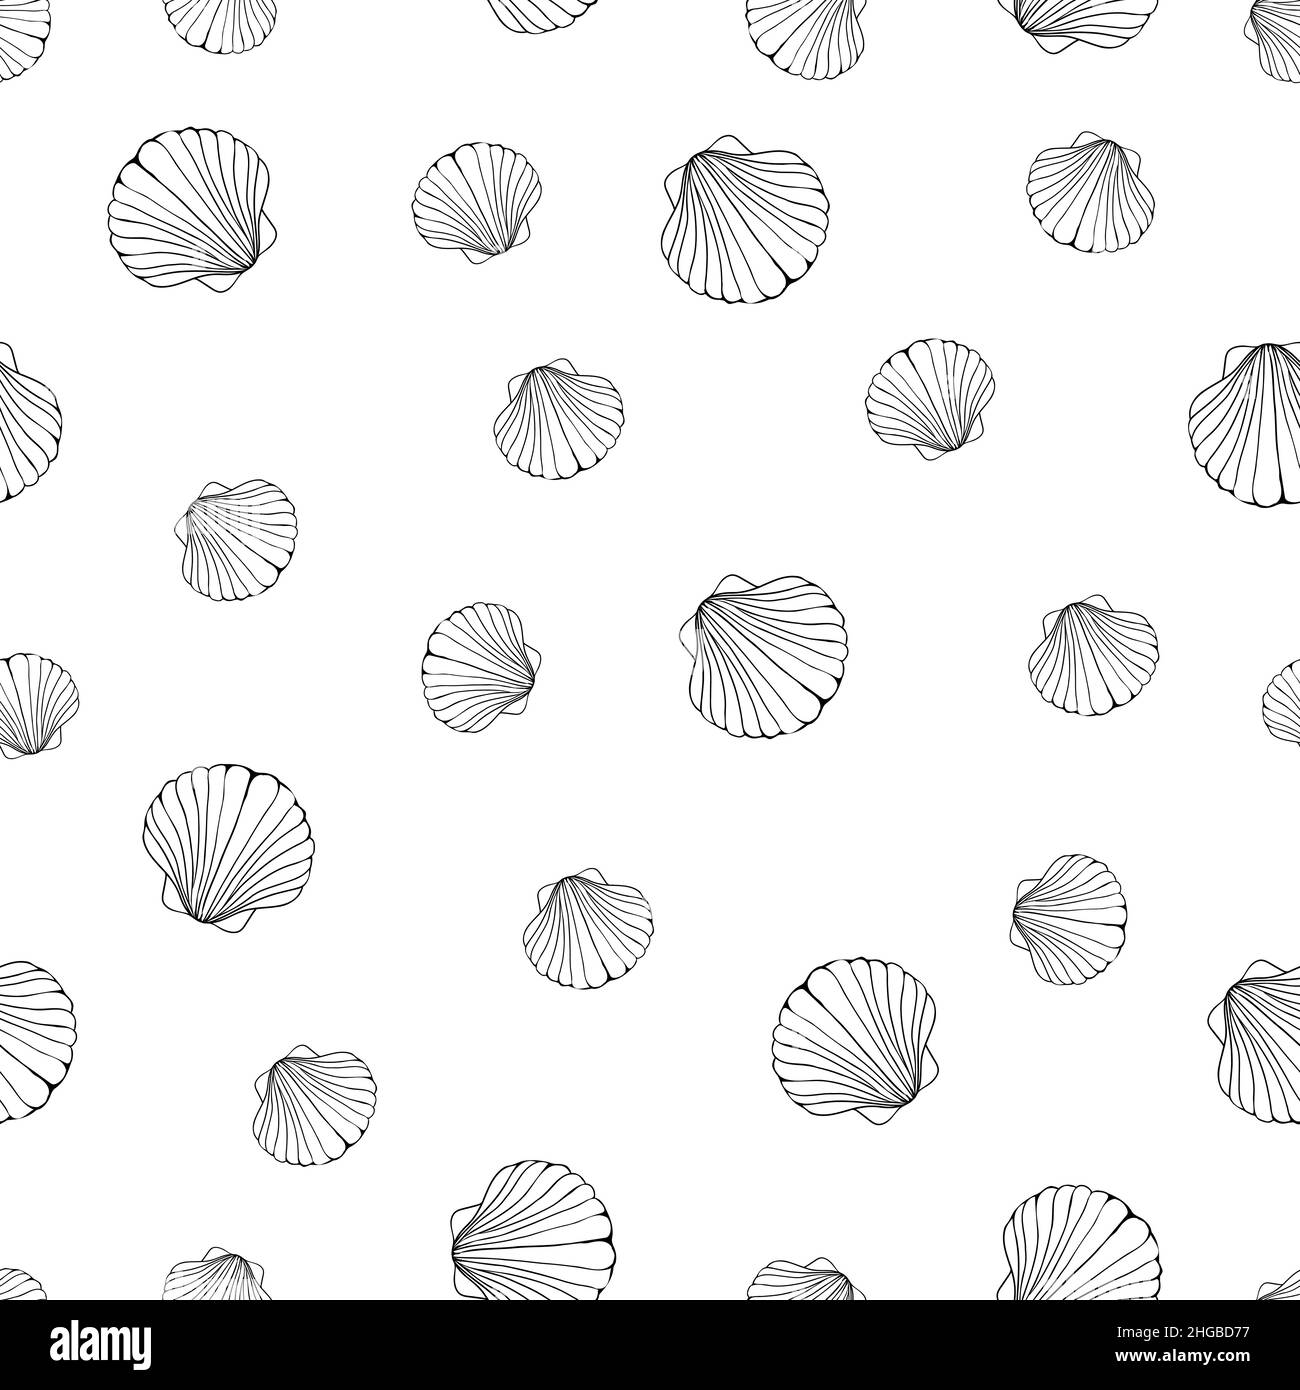 Meereshintergrund. Handgezeichnete Vektorgrafiken - Nahtloses Musterung von Muscheln. Stock Vektor